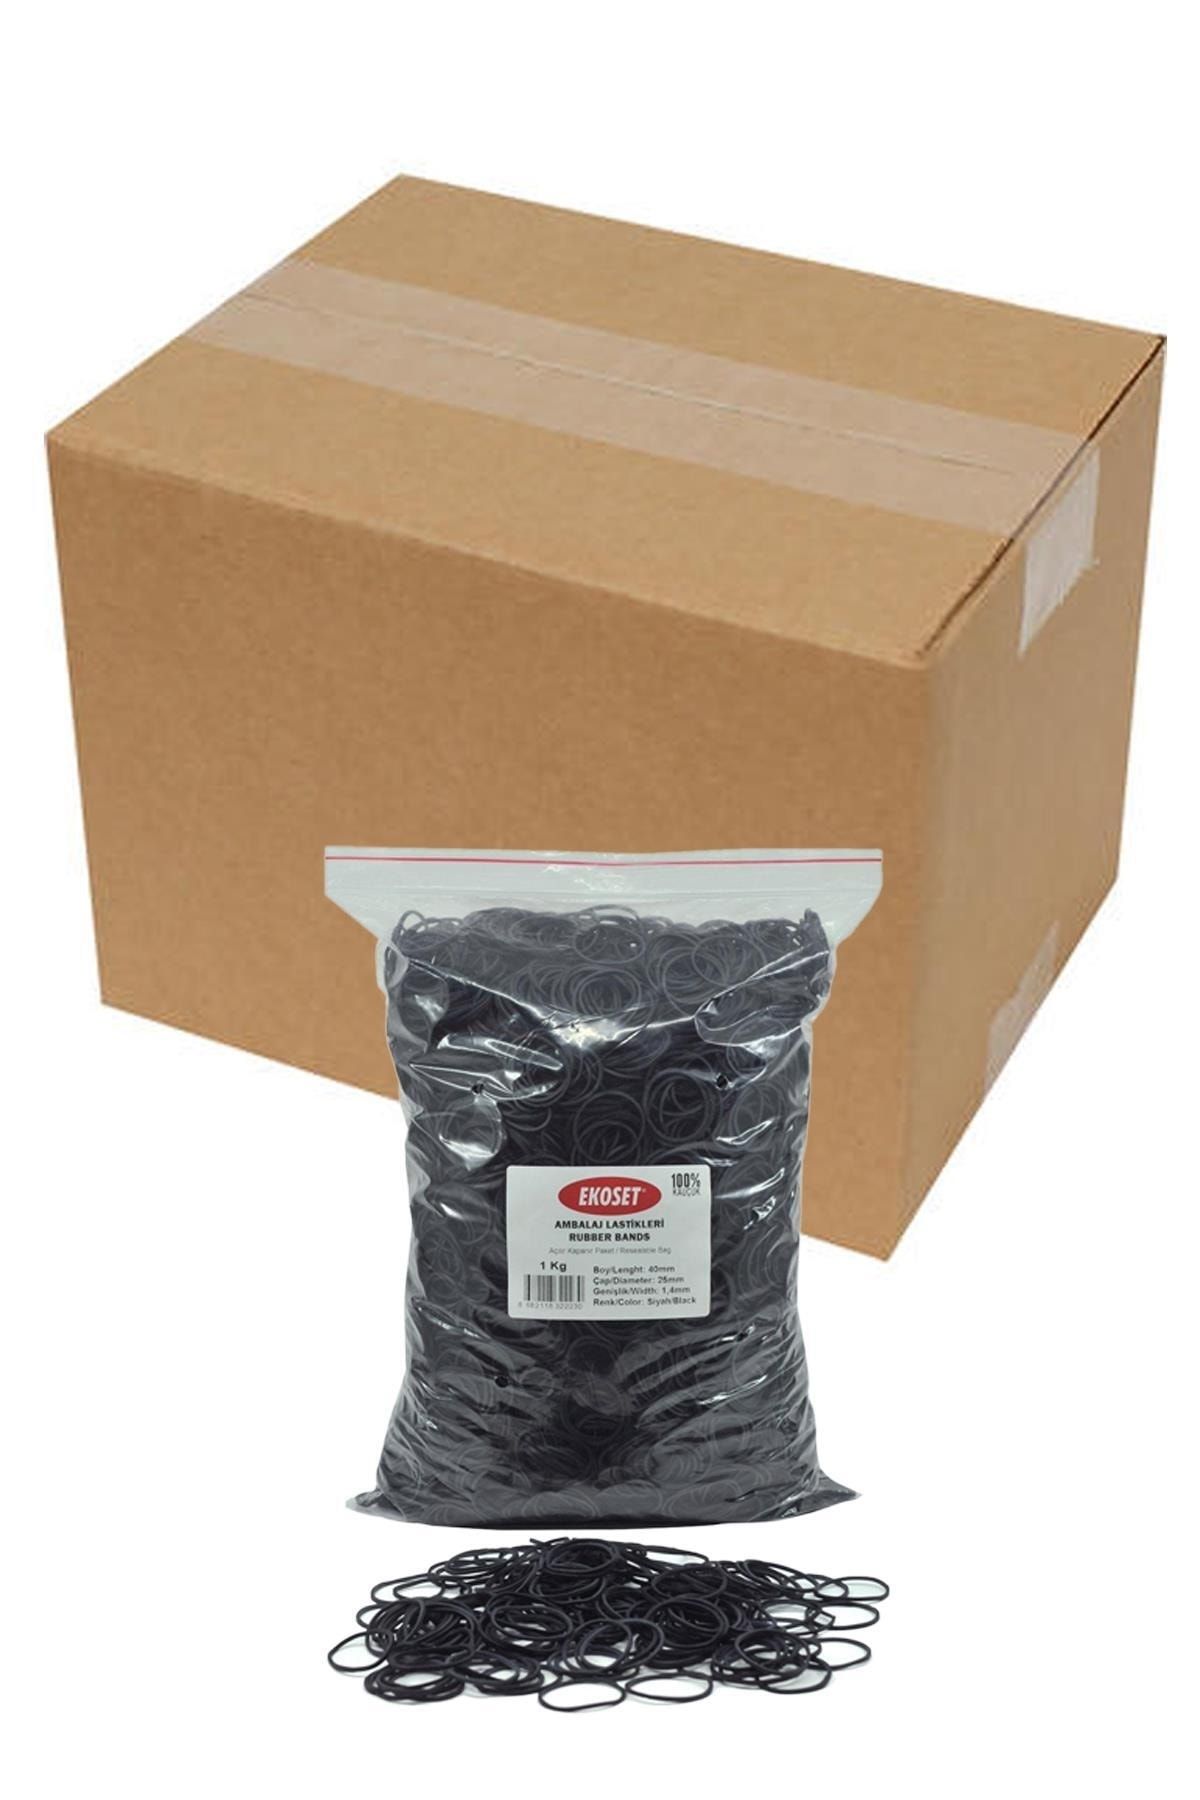 ekoset 40mm Siyah Renkli Kauçuk Paket Ambalaj Lastiği 12kg Koli